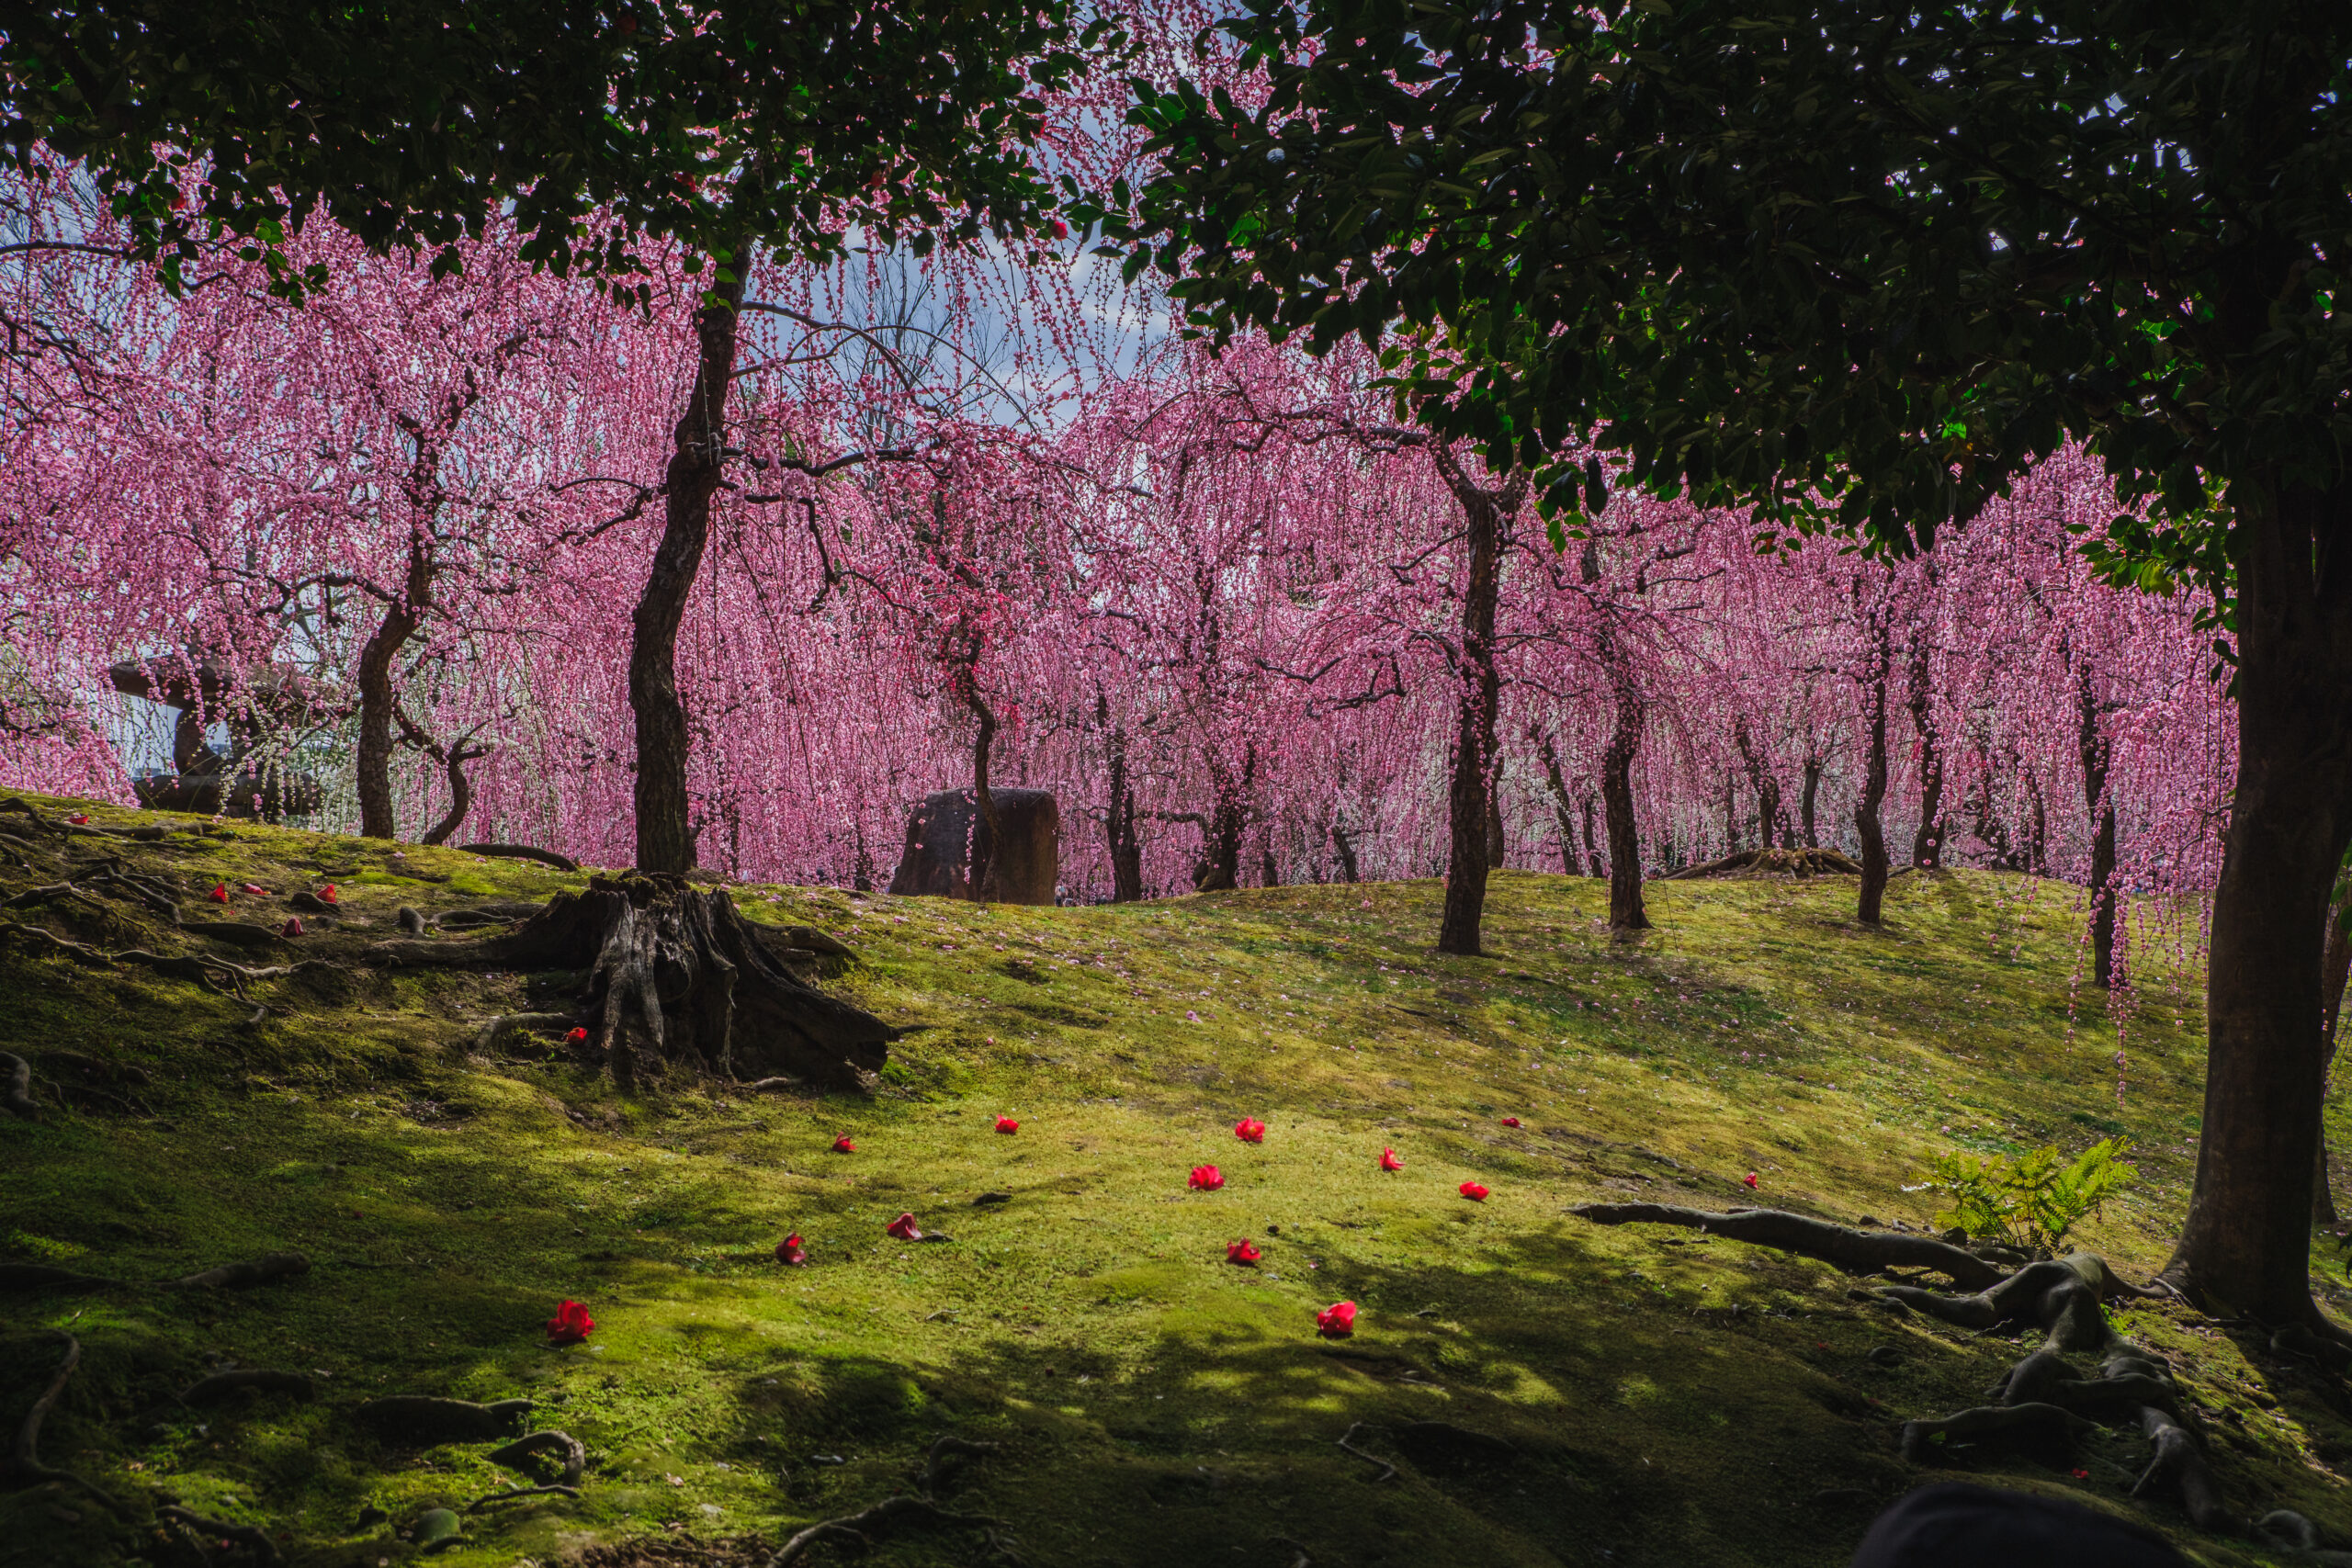 DSCF0955-scaled 京都 城南宮(庭園に咲く150本の枝垂梅が絶景の写真スポット! 撮影した写真の紹介、アクセス情報や交通手段・駐車場情報などまとめ)